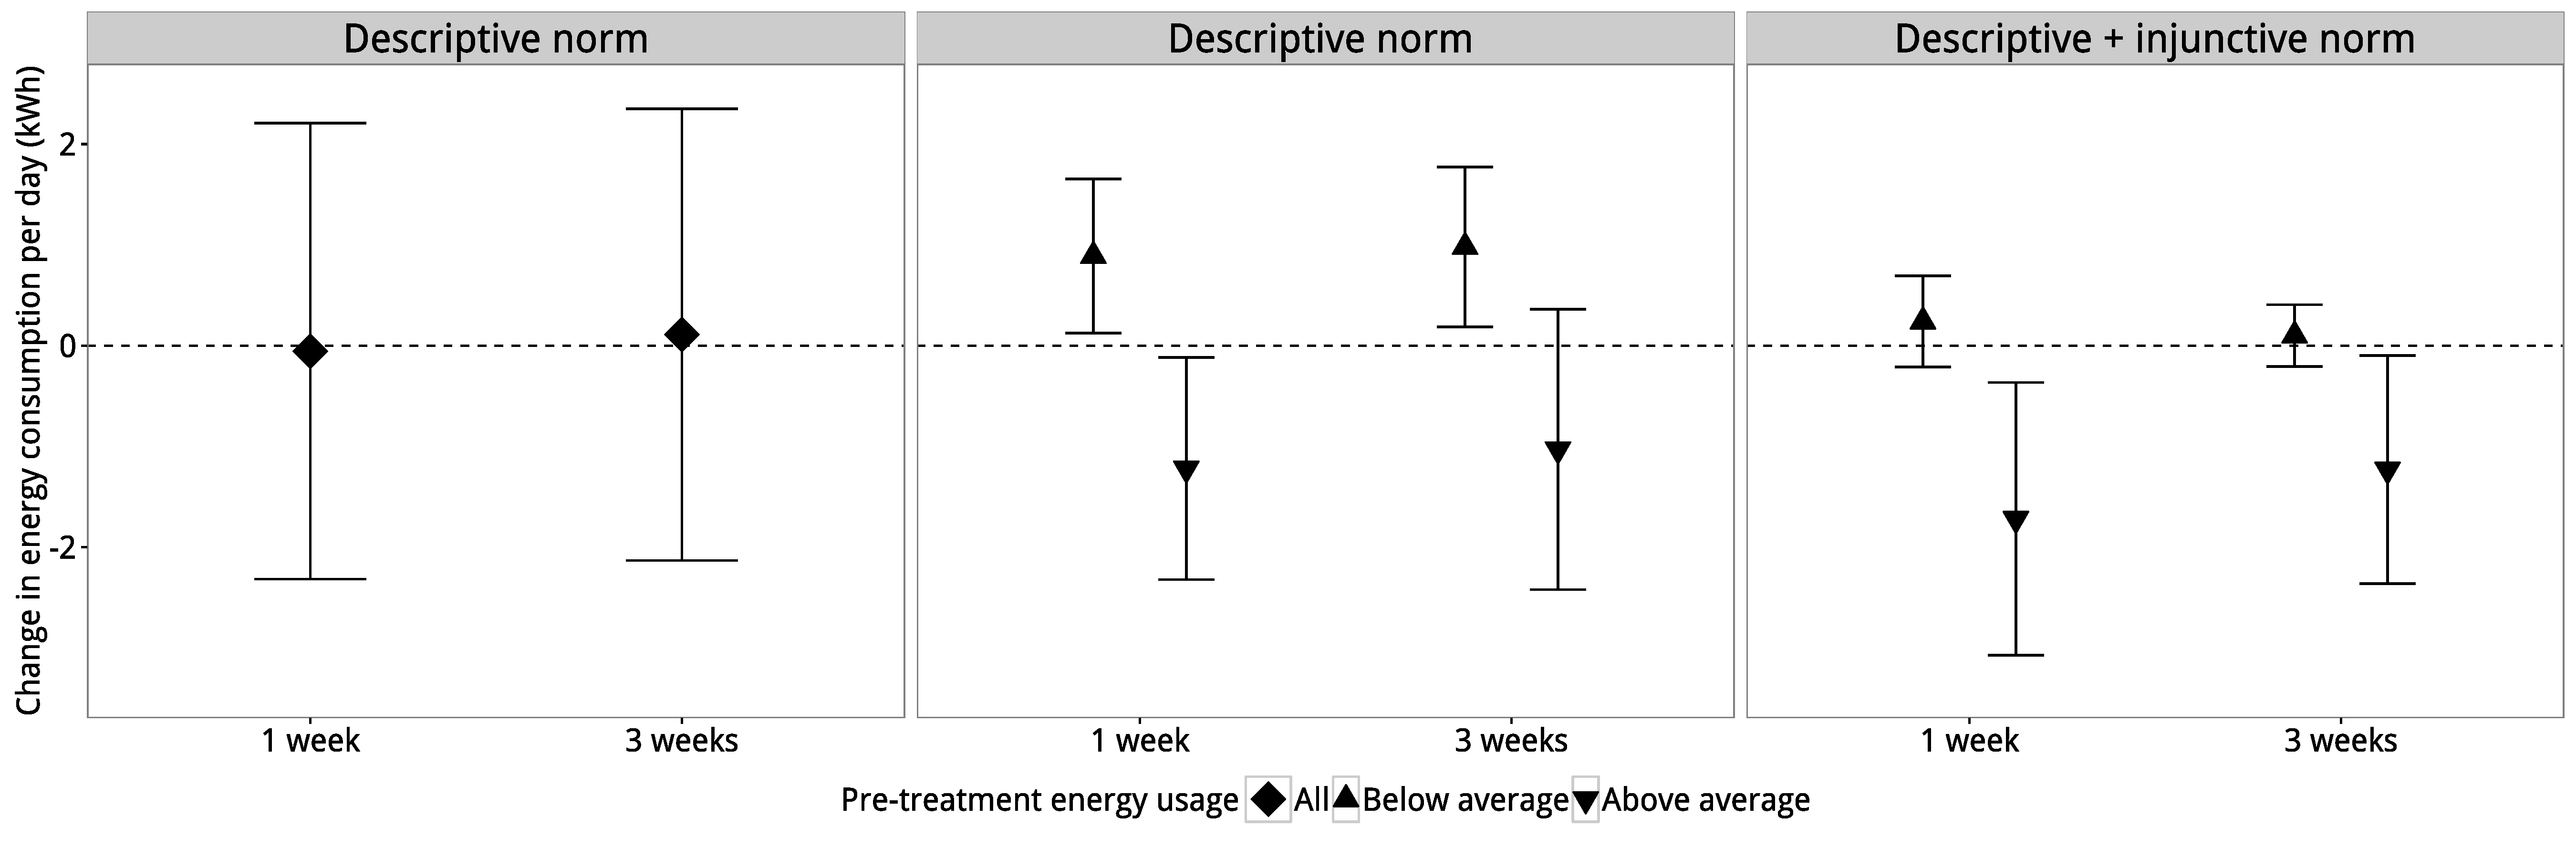 Слика 4.4: Резултати од Шулц и сор. (2007). Панелот (а) покажува дека третманот за дескриптивна норма има проценет нула просечен ефект на третман. Сепак, панелот (б) покажува дека овој просечен третман ефект всушност е составен од два неутрални ефекти. За тешки корисници, третманот ја намали употребата, но за лесни корисници, третманот ја зголеми употребата. Конечно, панелот (в) покажува дека вториот третман, кој користел описни и навредливи норми, имаше приближно ист ефект врз тешките корисници, но го ублажил ефектот на бумеранг кај корисниците на светлина. Адаптирано од Schultz et al. (2007).